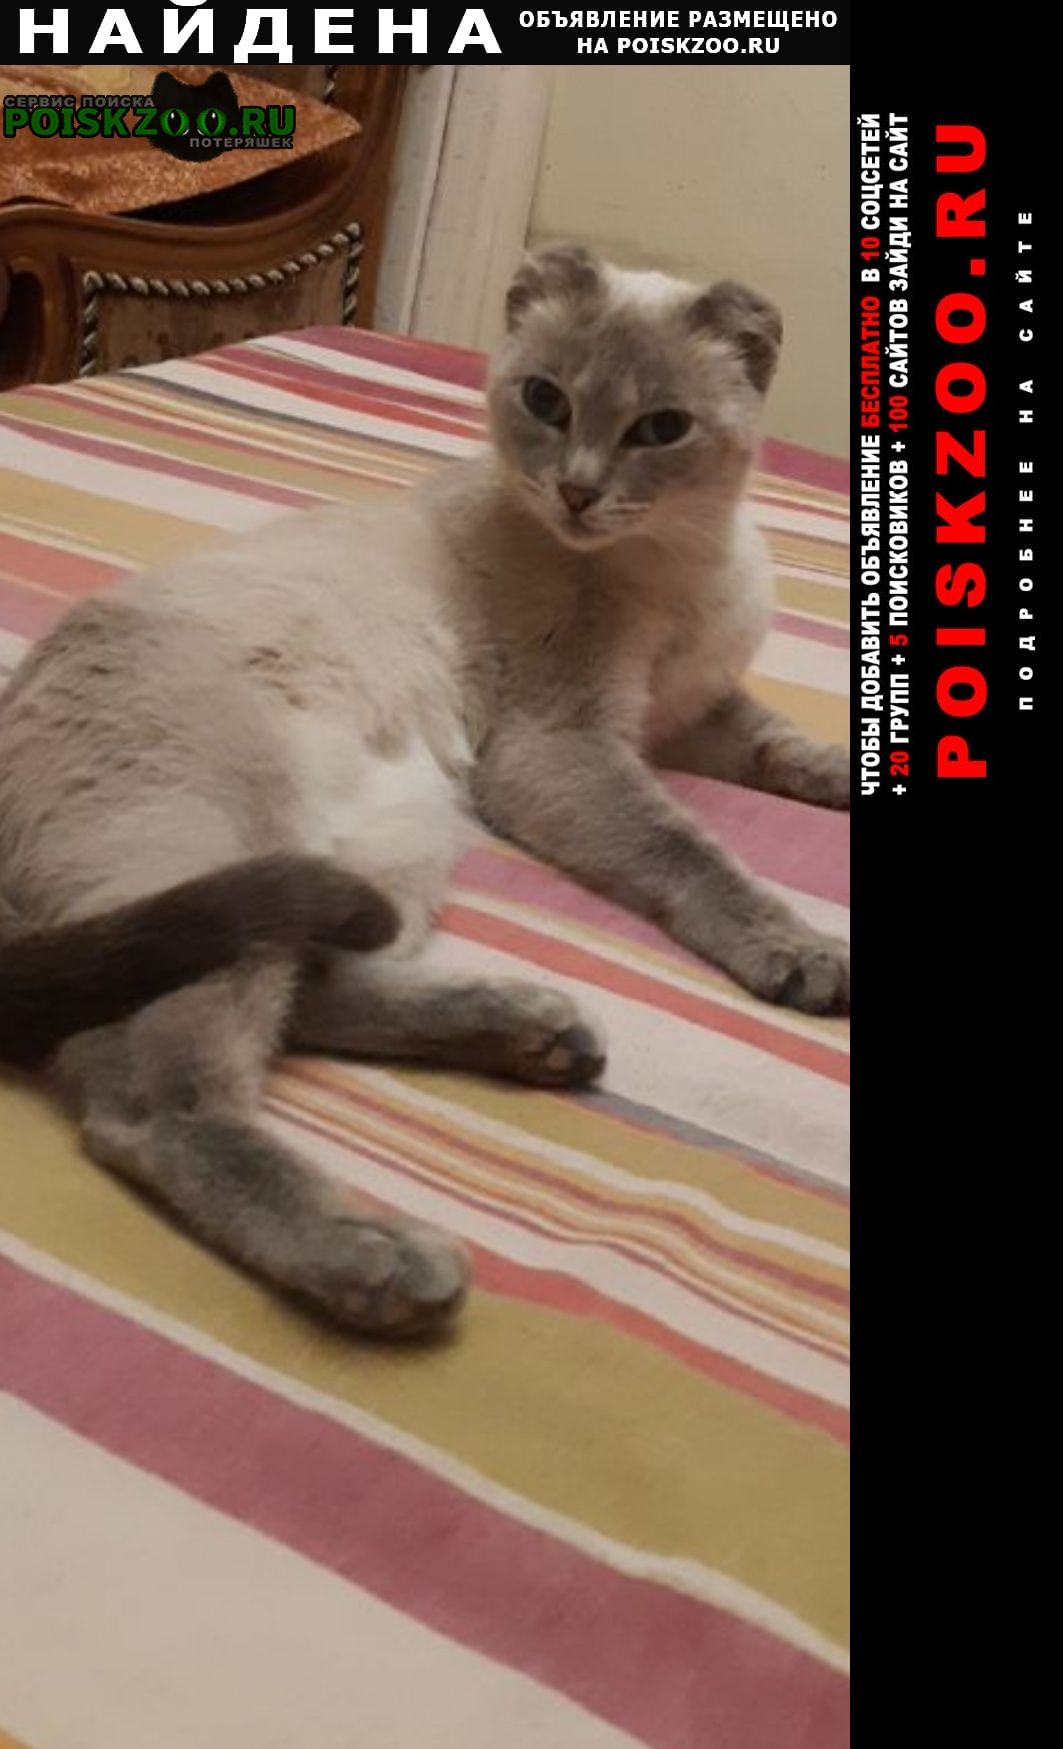 Найдена кошка в сотых кварталах Улан-Удэ